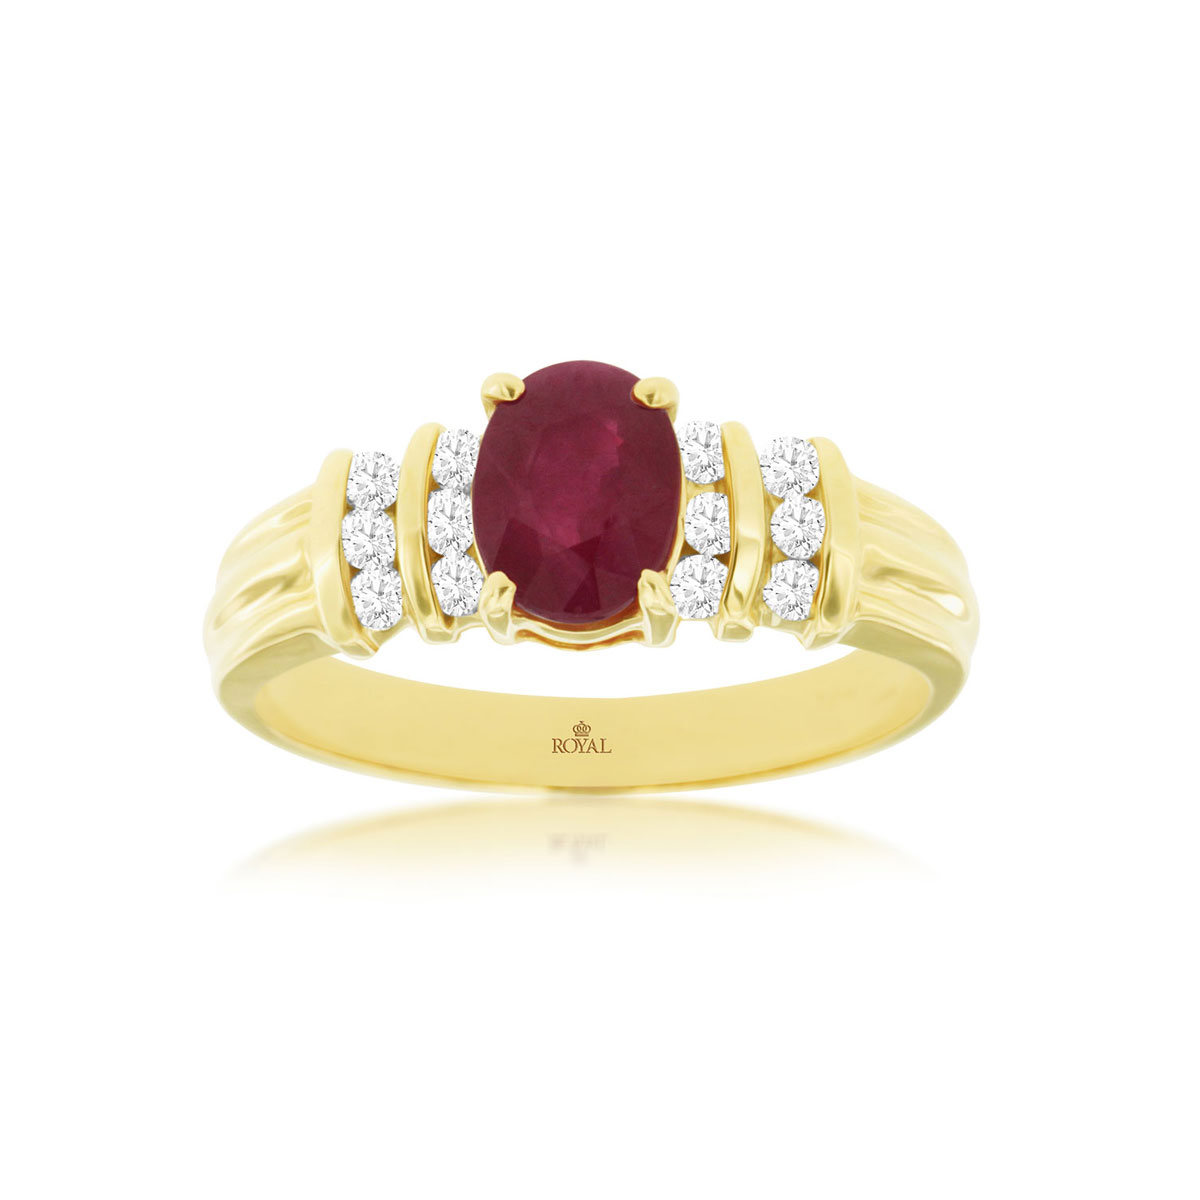 Ruby & Diamond Ring, Royal 2933RB